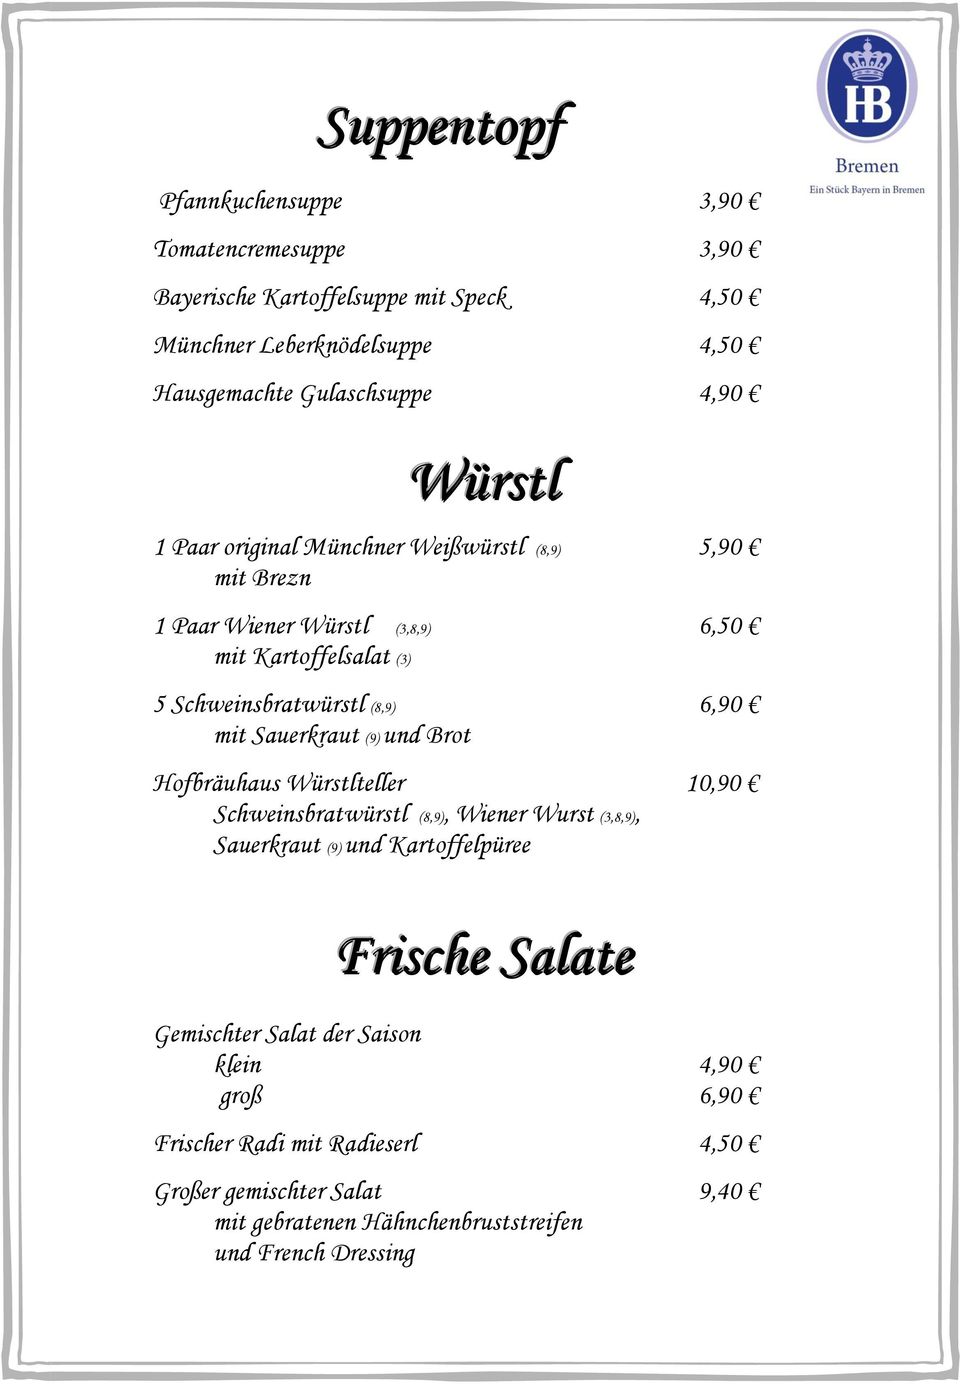 Sauerkraut (9) und Brot Hofbräuhaus Würstlteller 10,90 Schweinsbratwürstl (8,9), Wiener Wurst (3,8,9), Sauerkraut (9) und Kartoffelpüree Frische Salate